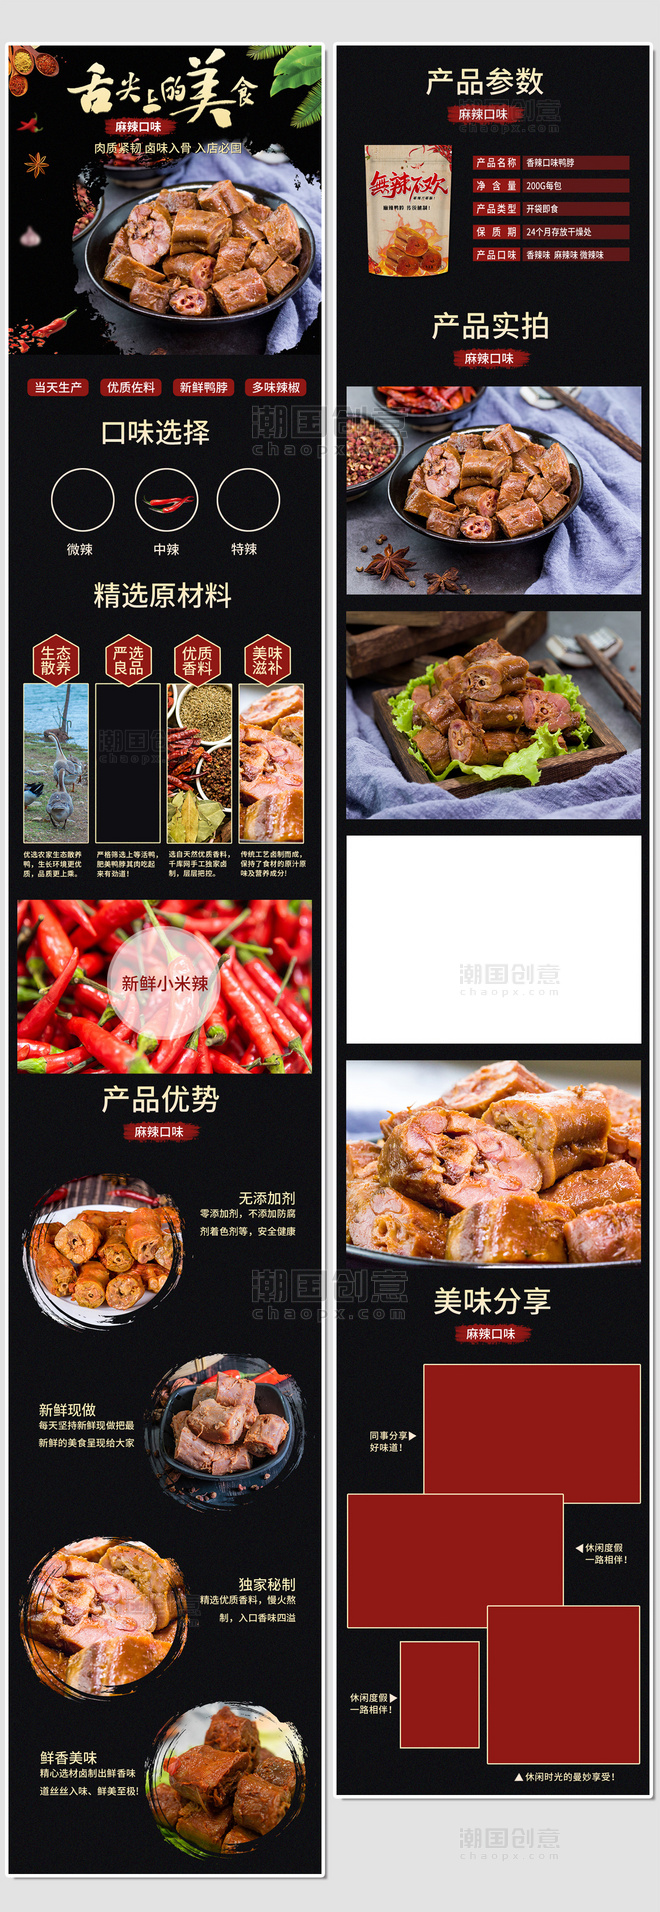 食品美味麻辣鸭脖中国风电商详情页